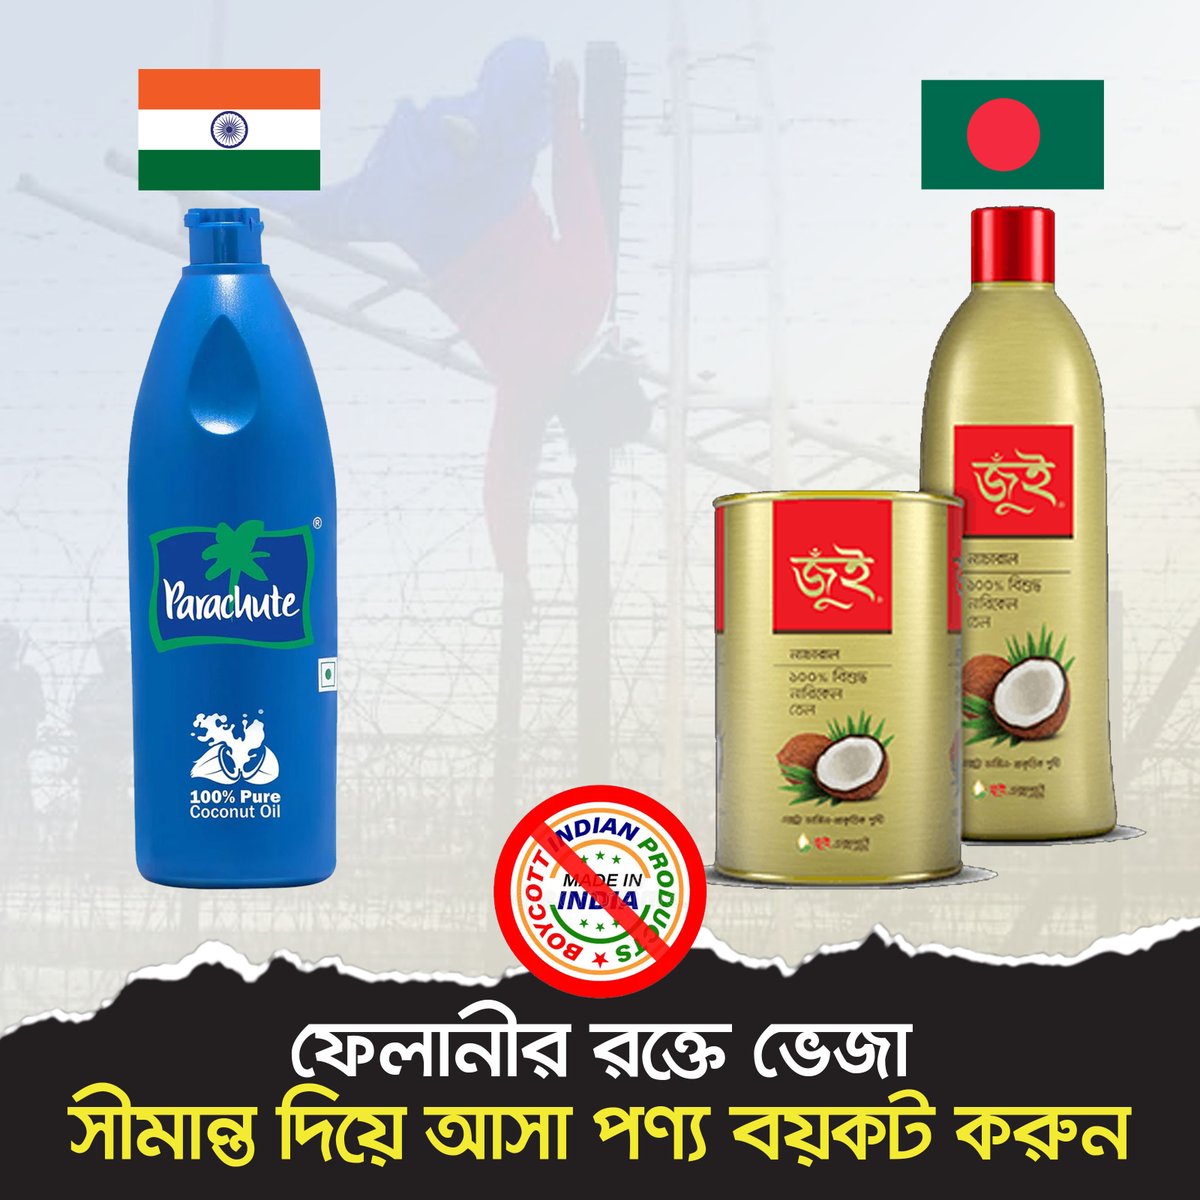 ফেলানীর রক্তে ভেজা সীমান্ত দিয়ে আসা পণ্য বয়কট করুন। #BoycottIndianProduct #IndiaOut #India #Bangladesh